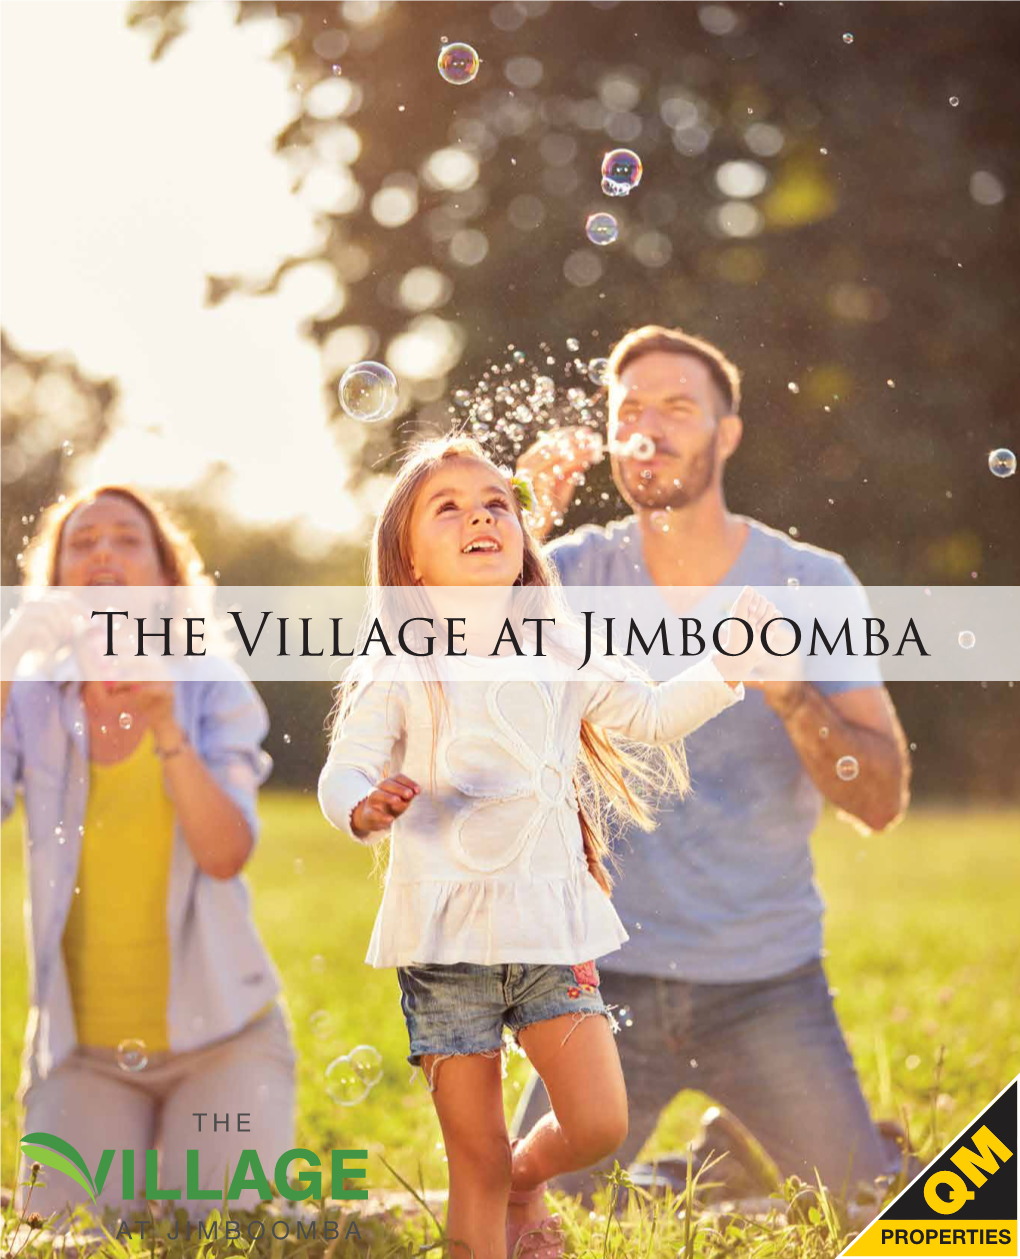 The Village at Jimboomba